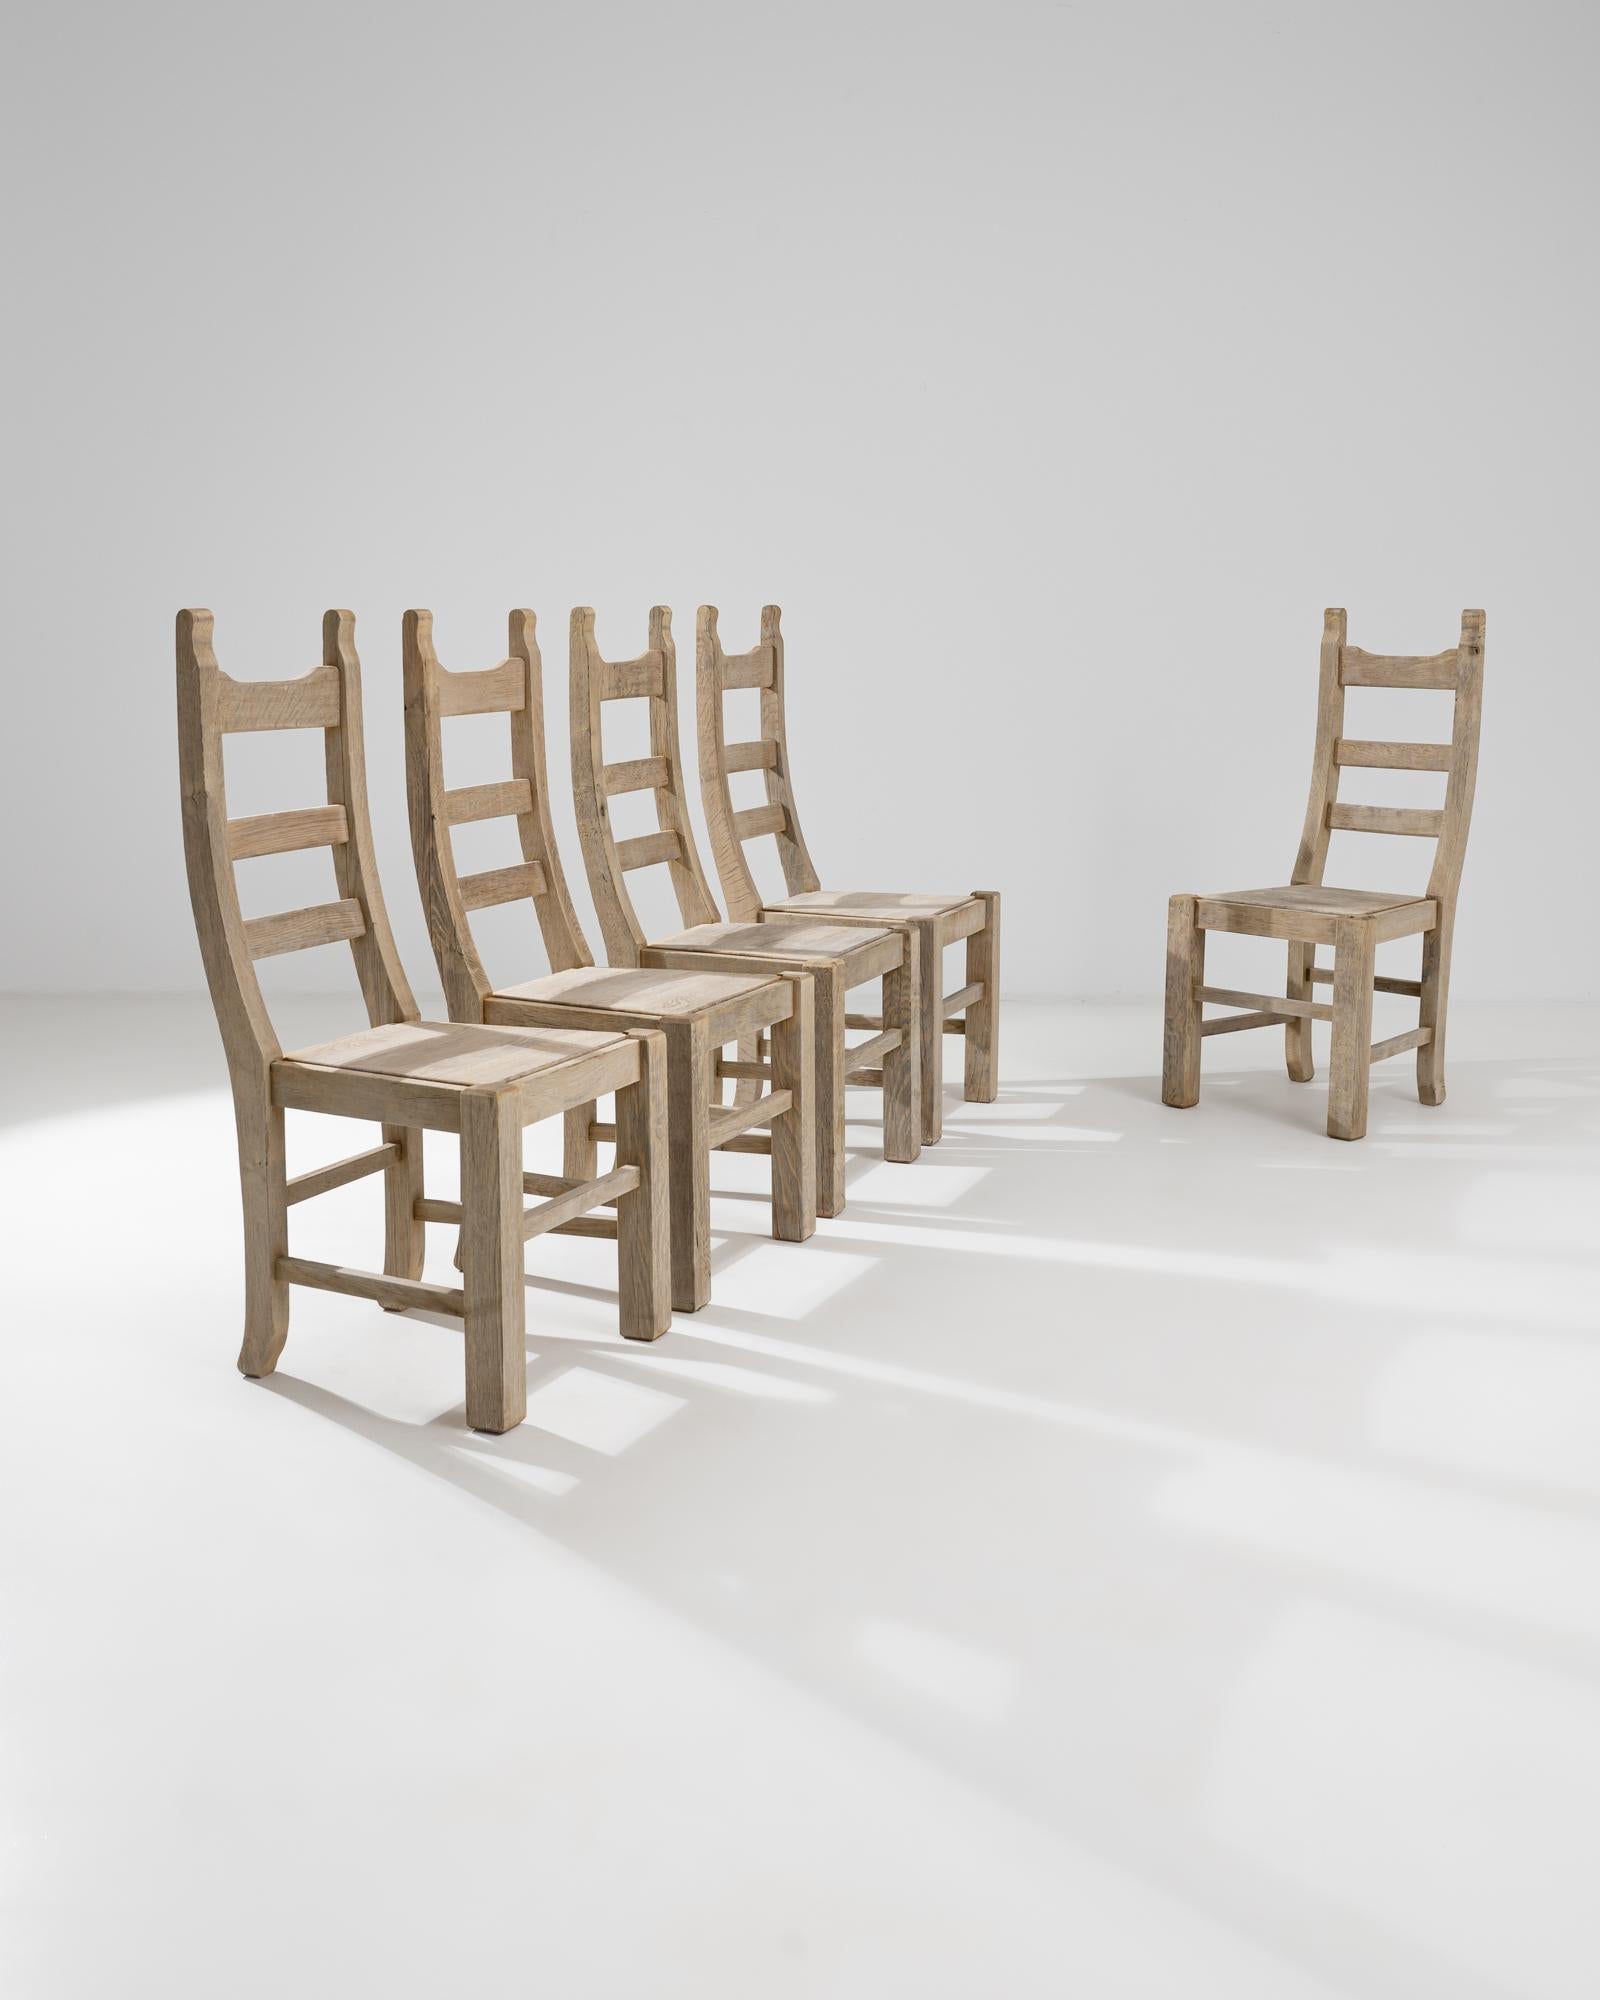 Un ensemble de chaises de salle à manger en bois de Belgique, vers 1960. Des sièges doucement arrondis, des fuseaux à tenon et mortaise décalés et des dossiers gracieusement arqués forment un ensemble de chaises agréables à regarder. Un processus de